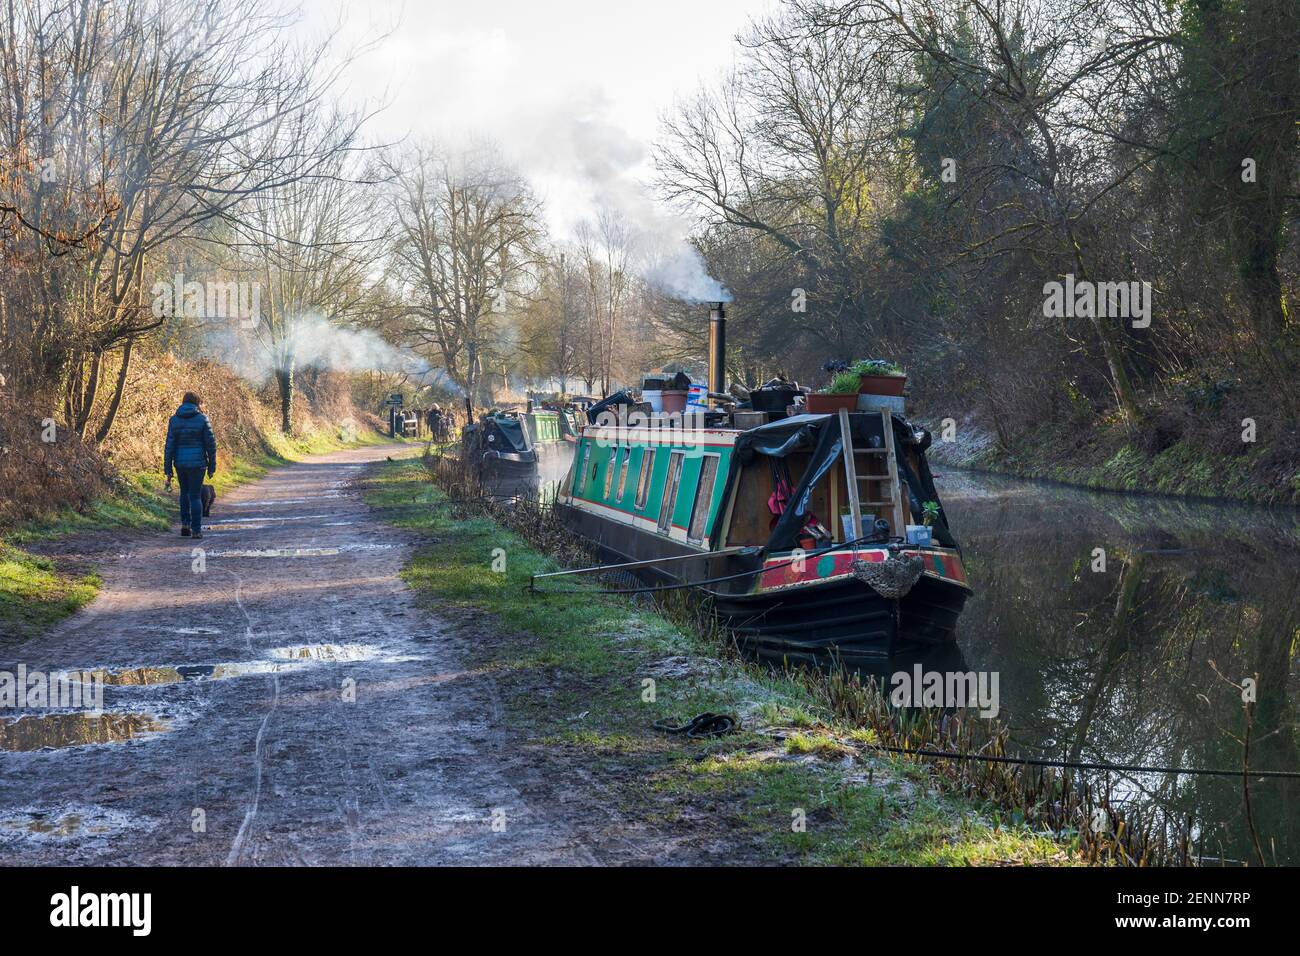 Camminando sulle barche del canale ormeggiate accanto all'alzaia del canale Kennett e Avon in una giornata invernale luminosa. Bradford on Avon, Wiltshire, Inghilterra, Regno Unito Foto Stock